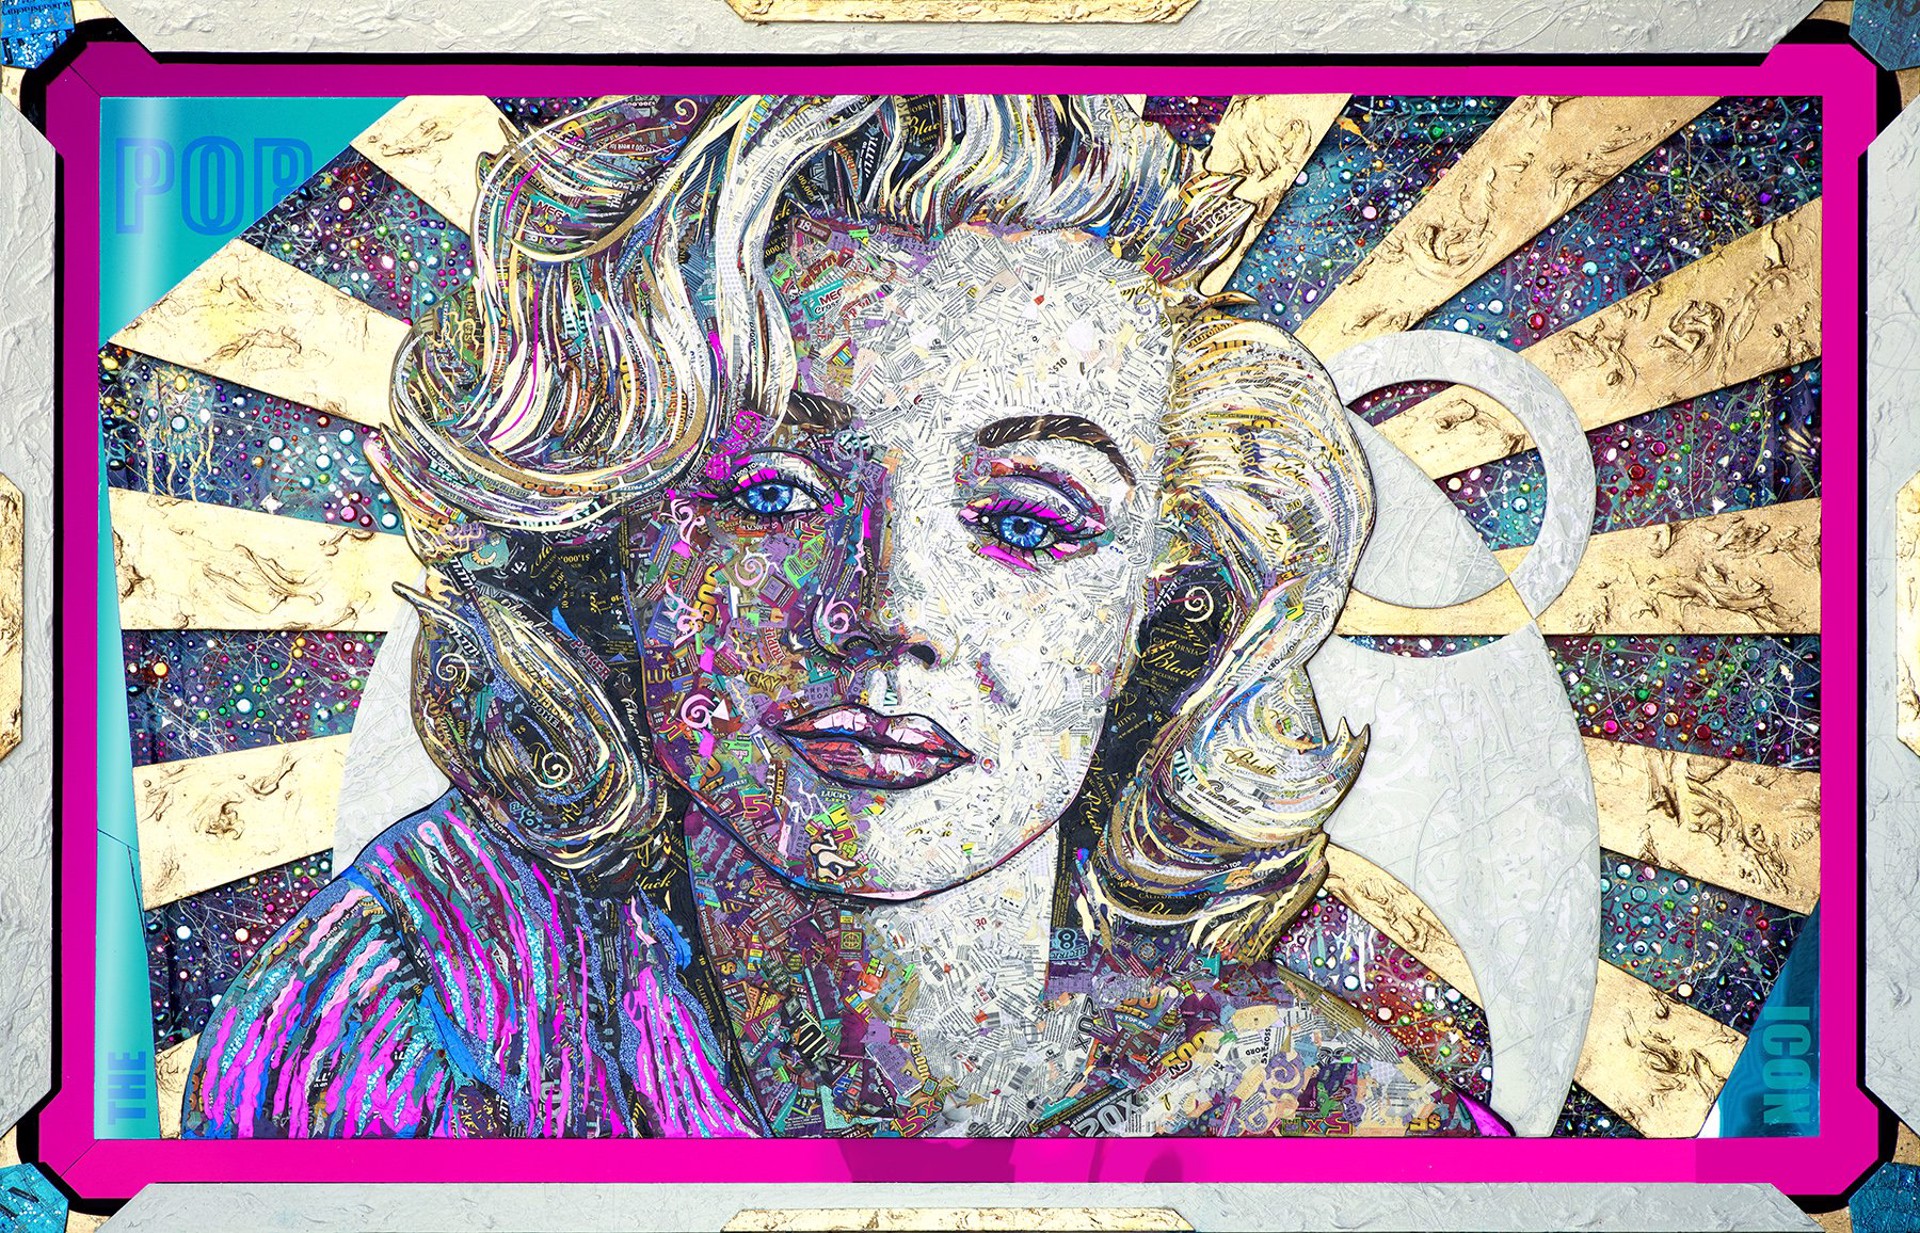 Pop Icons Never Fade (Monroe) by Brayden Bugazzi